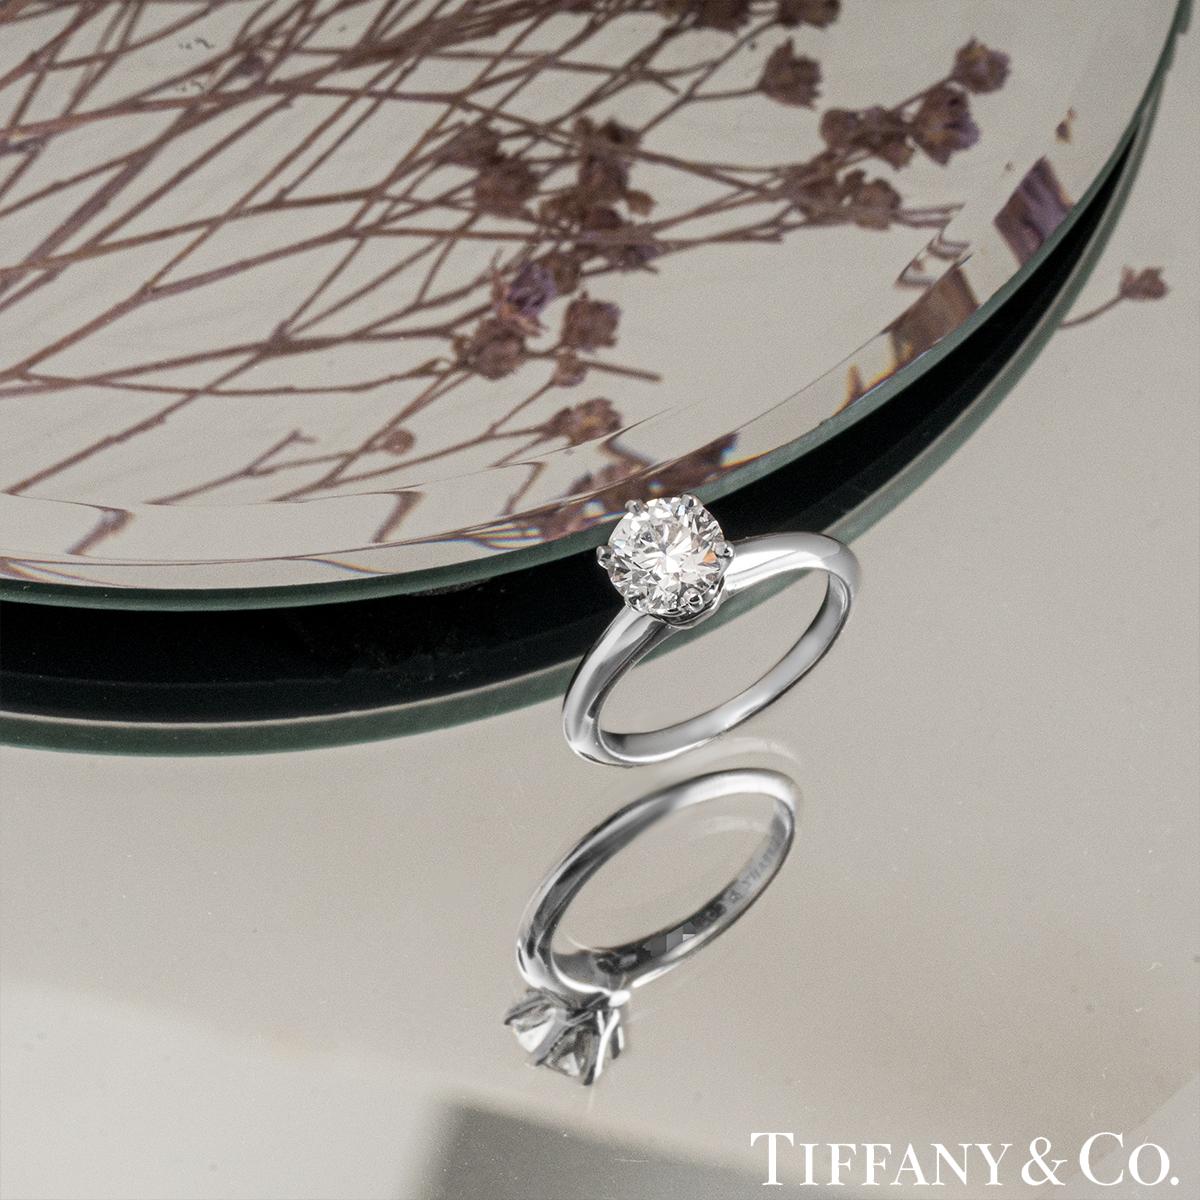 GIA Certified Tiffany & Co. Round Brilliant Cut Diamond Ring 1.01ct E/VS1 For Sale 1